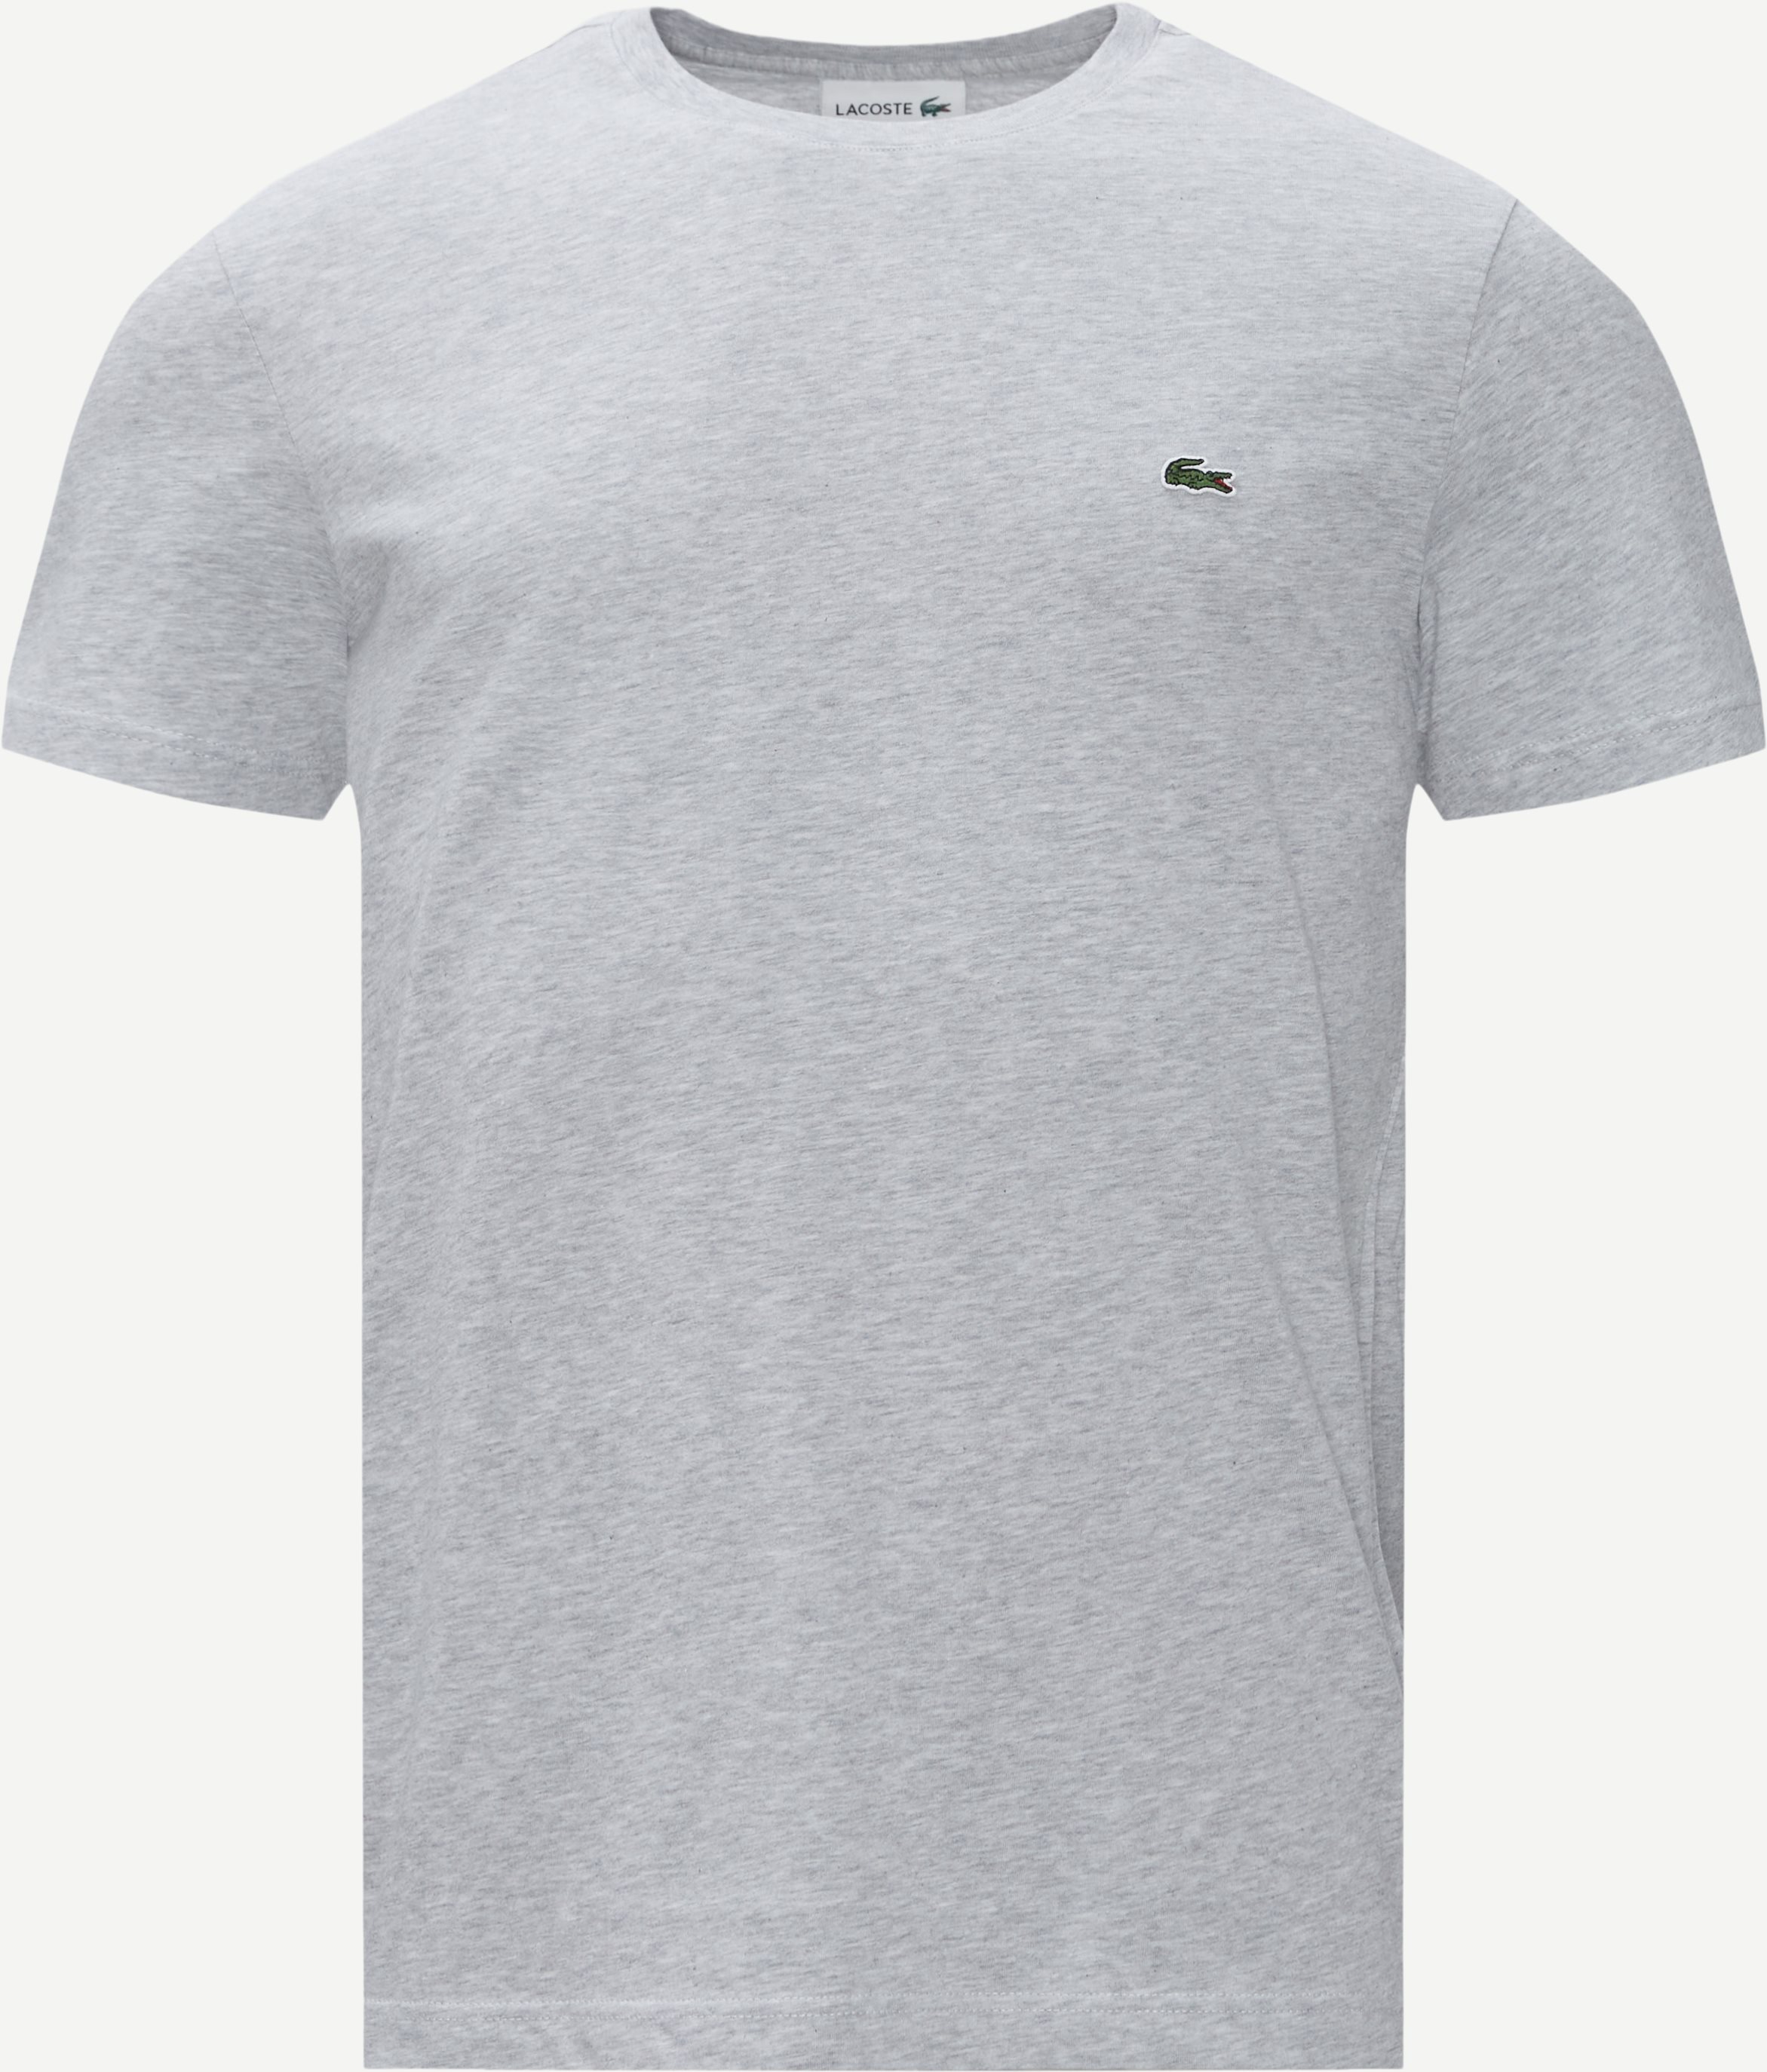 Pima Cotton Jersey Tee - T-shirts - Regular fit - Grå